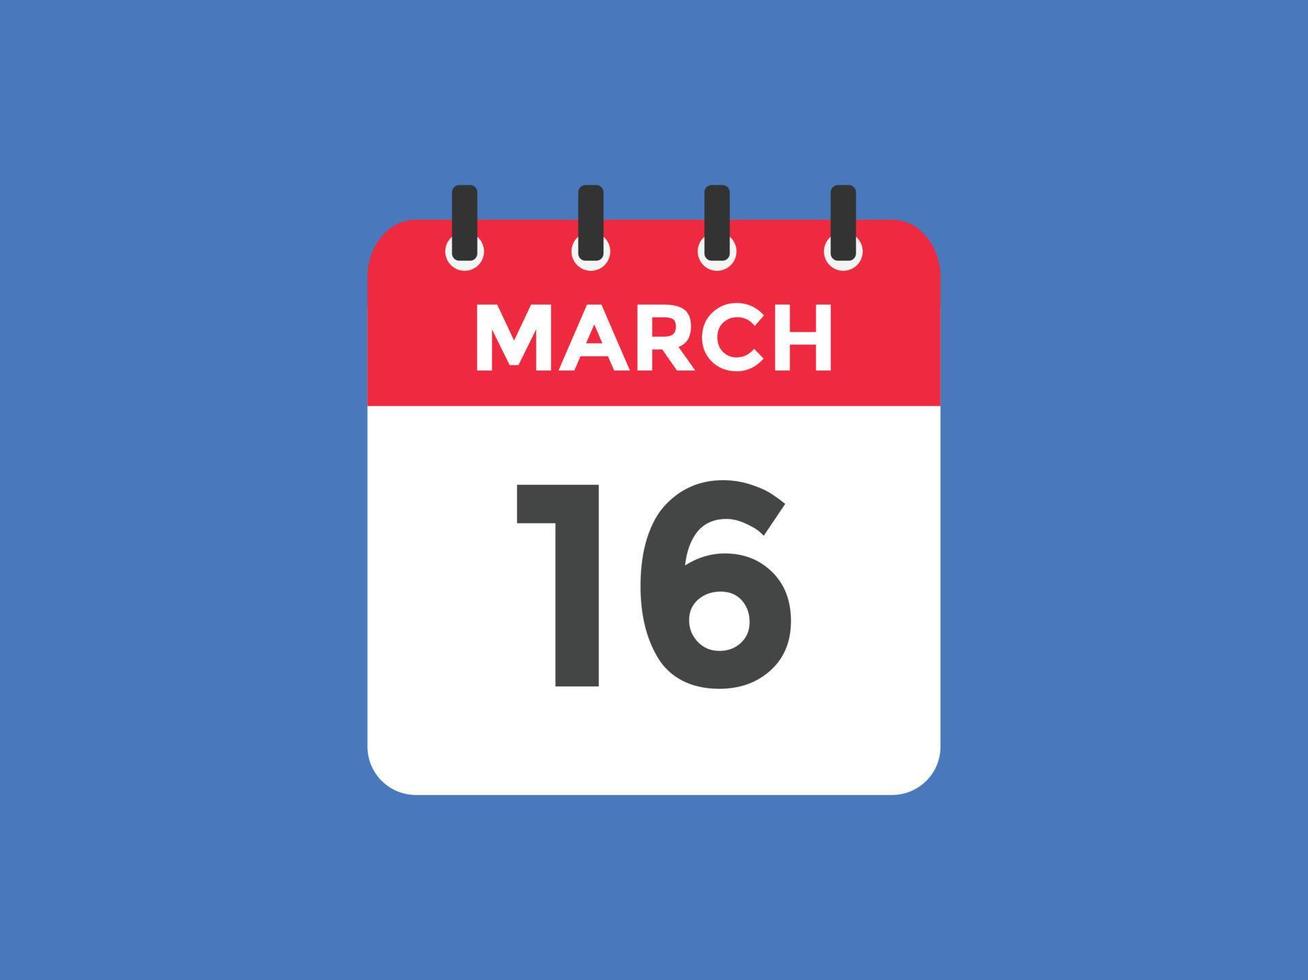 16 de março lembrete de calendário. 16 de março modelo de ícone de calendário diário. modelo de design de ícone de calendário 16 de março. ilustração vetorial vetor